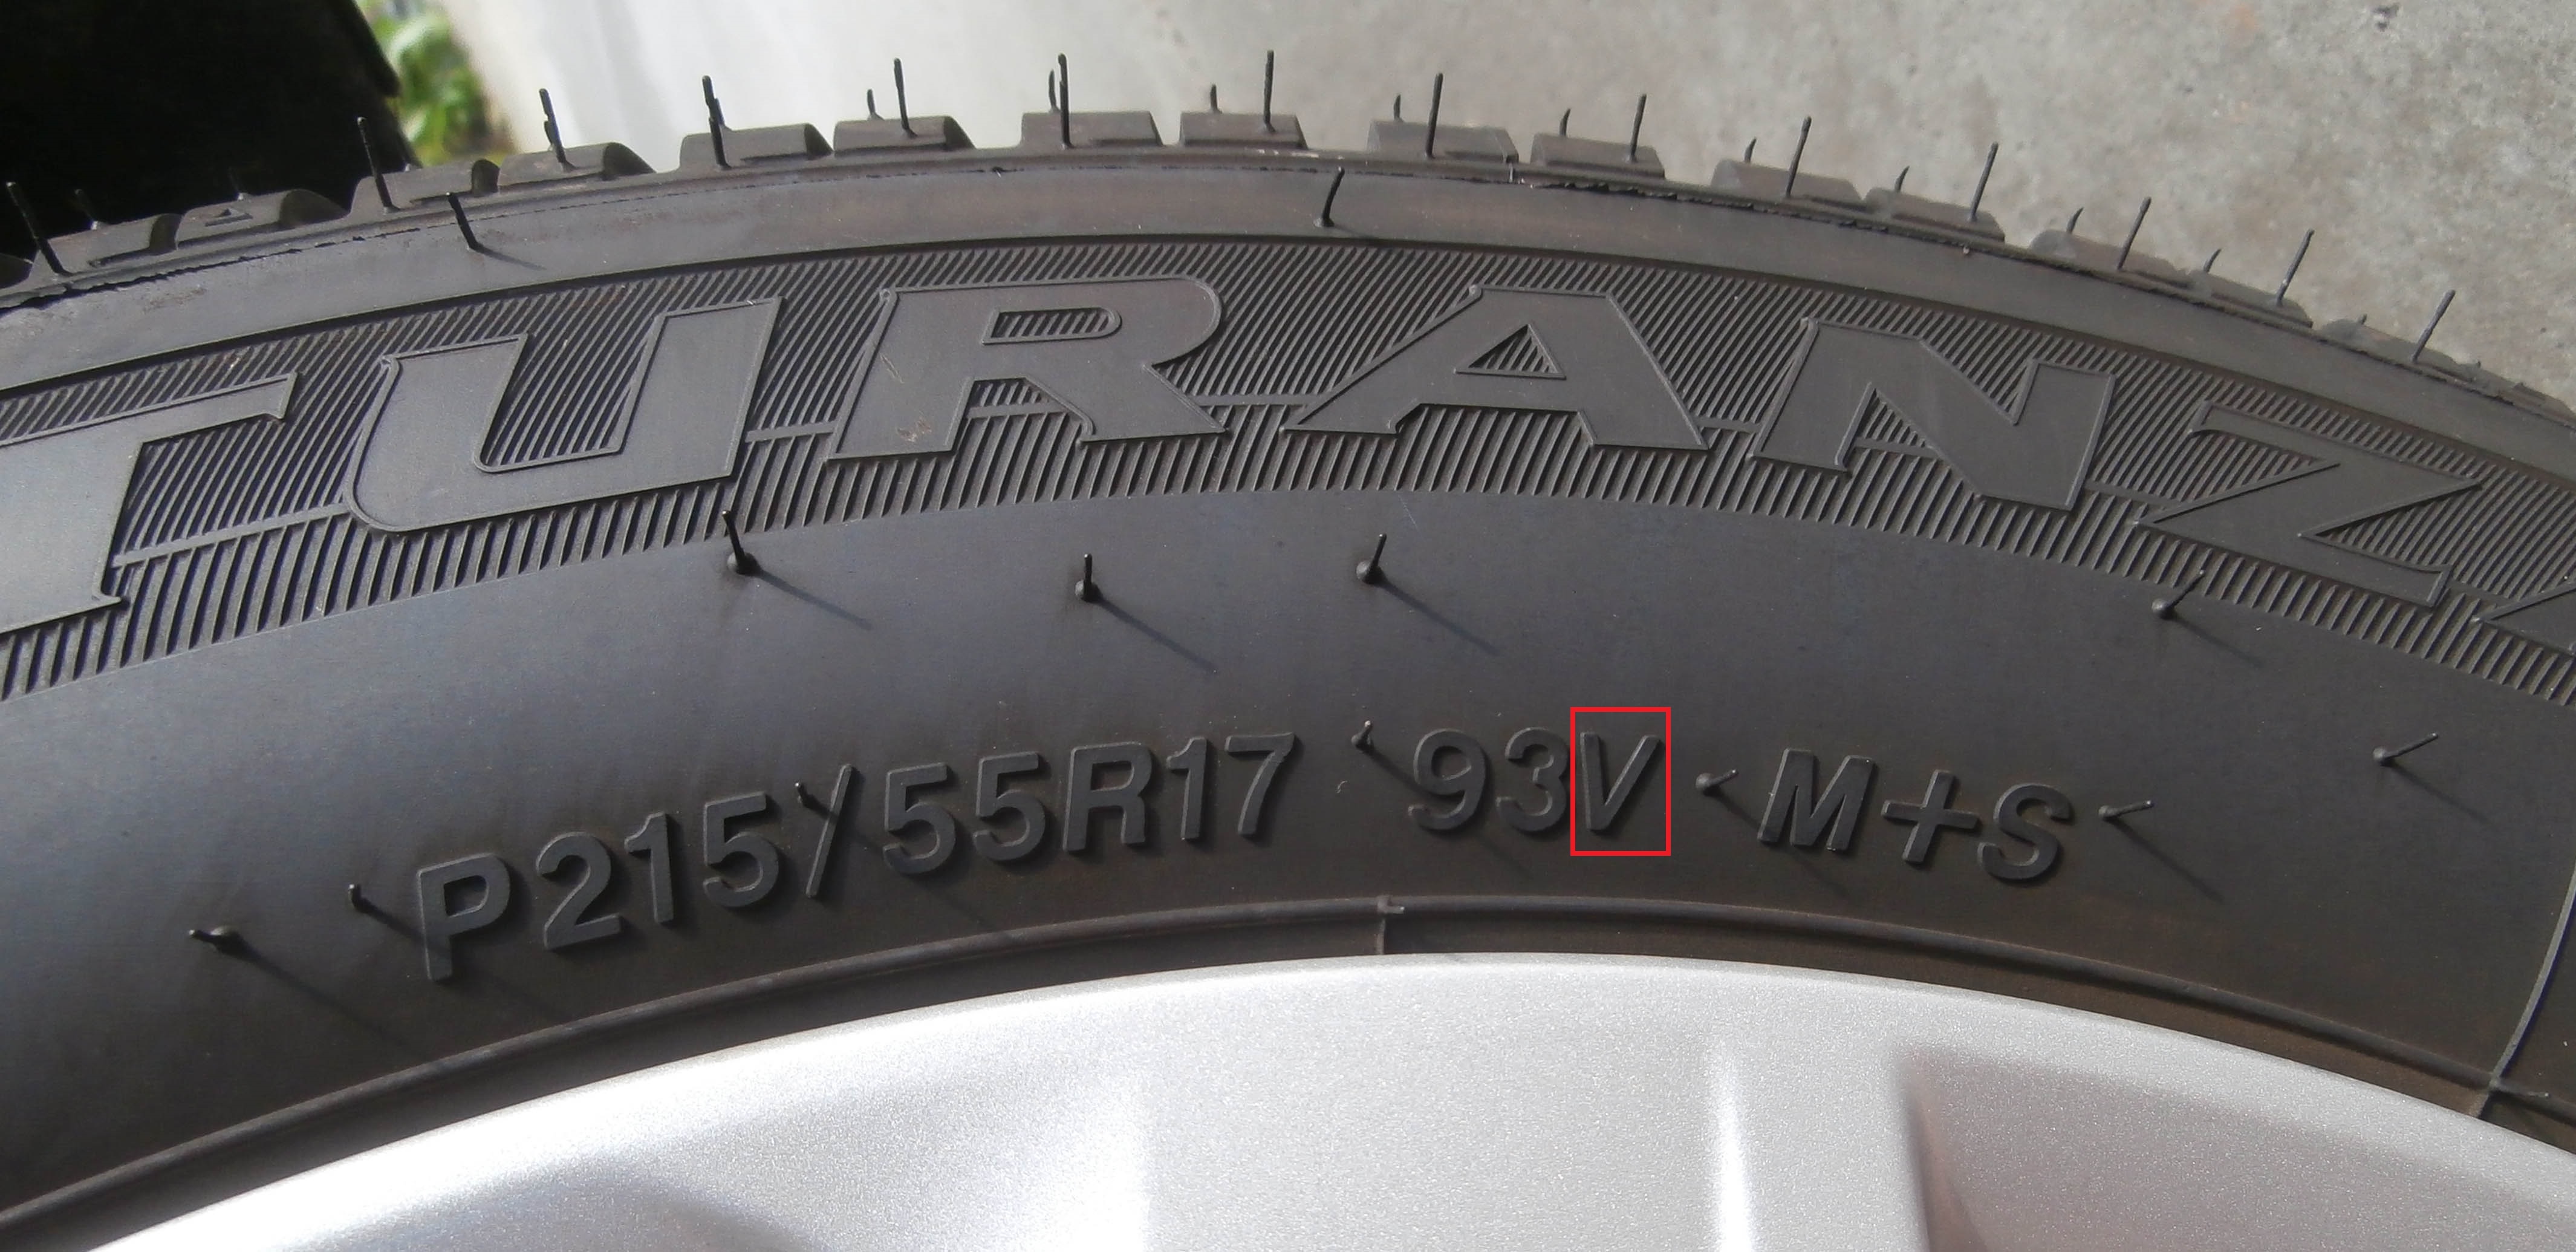 índice de velocidade do pneu